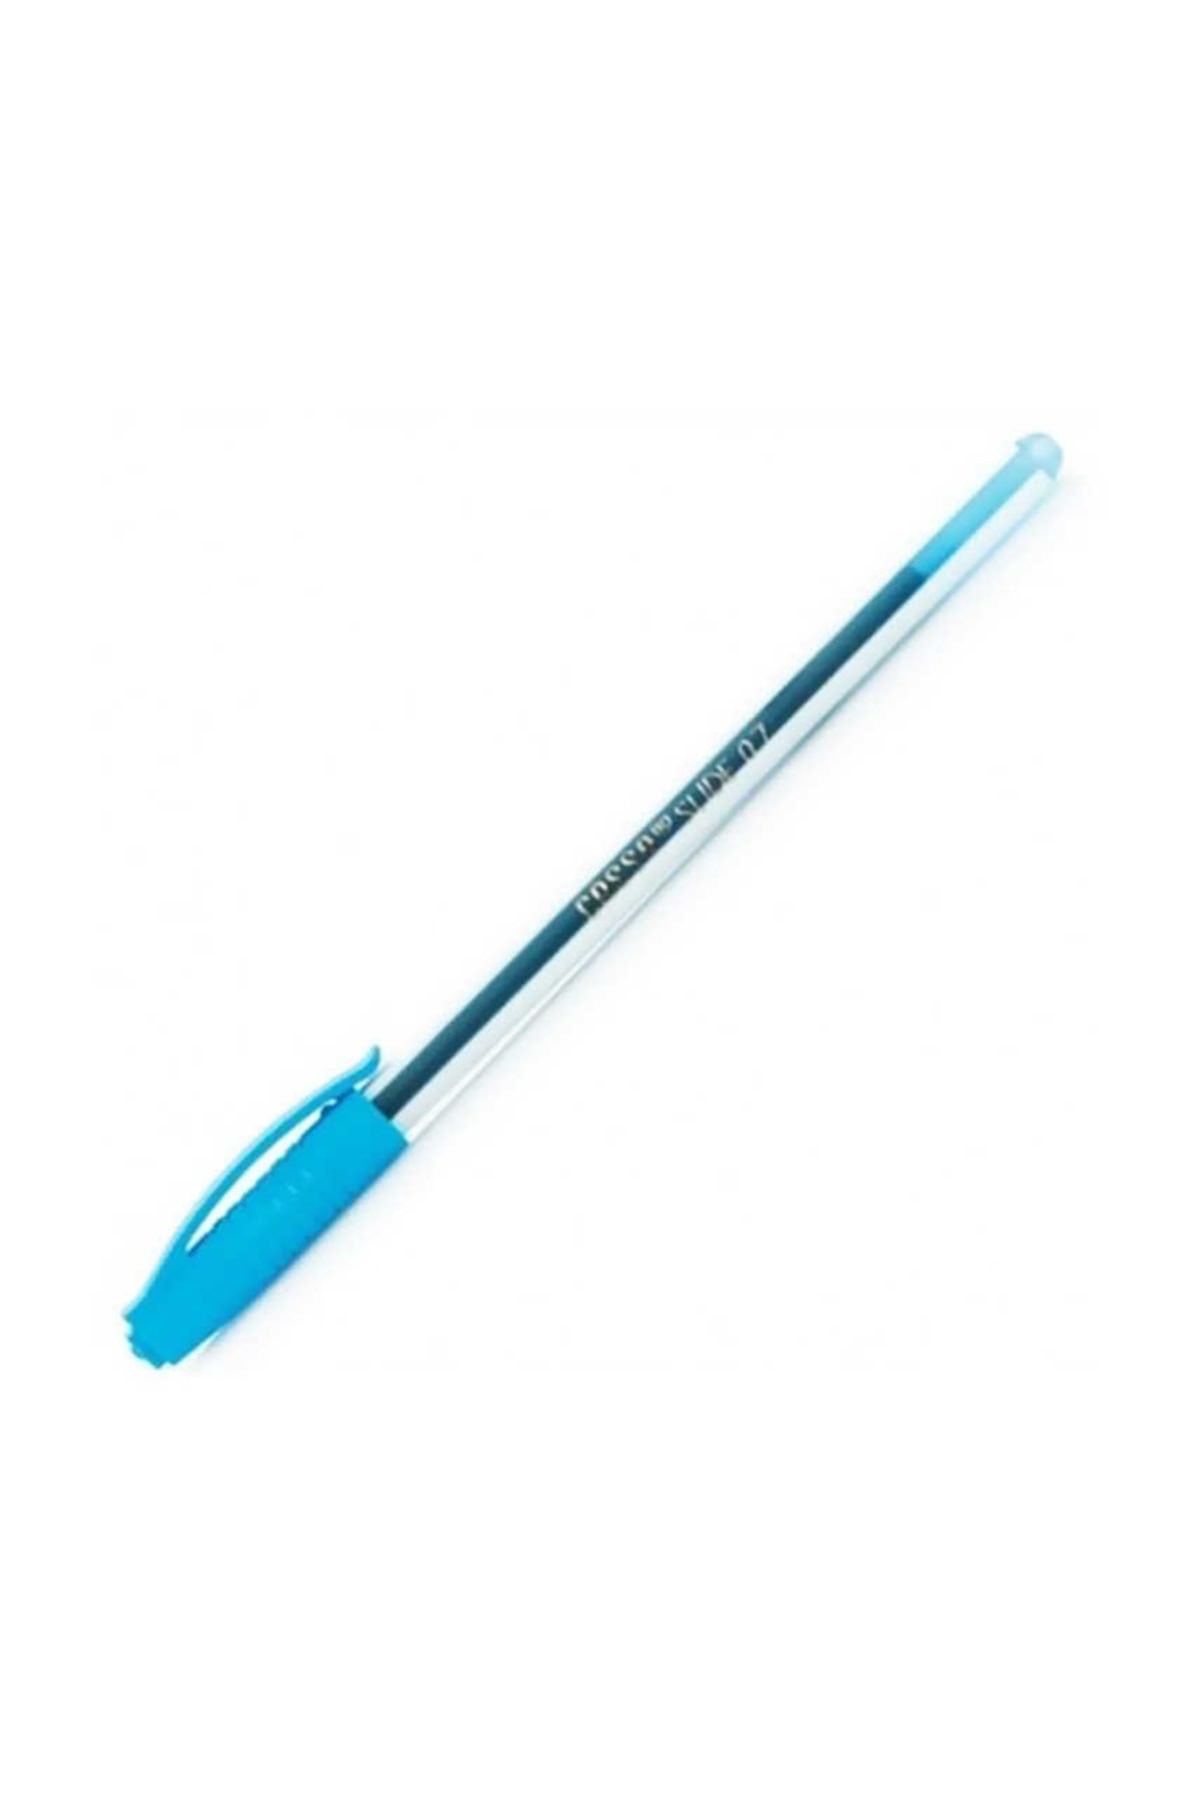 Ball Pen CASSA - 8730 ( TRIANGLE ) - BLUE - 0.7